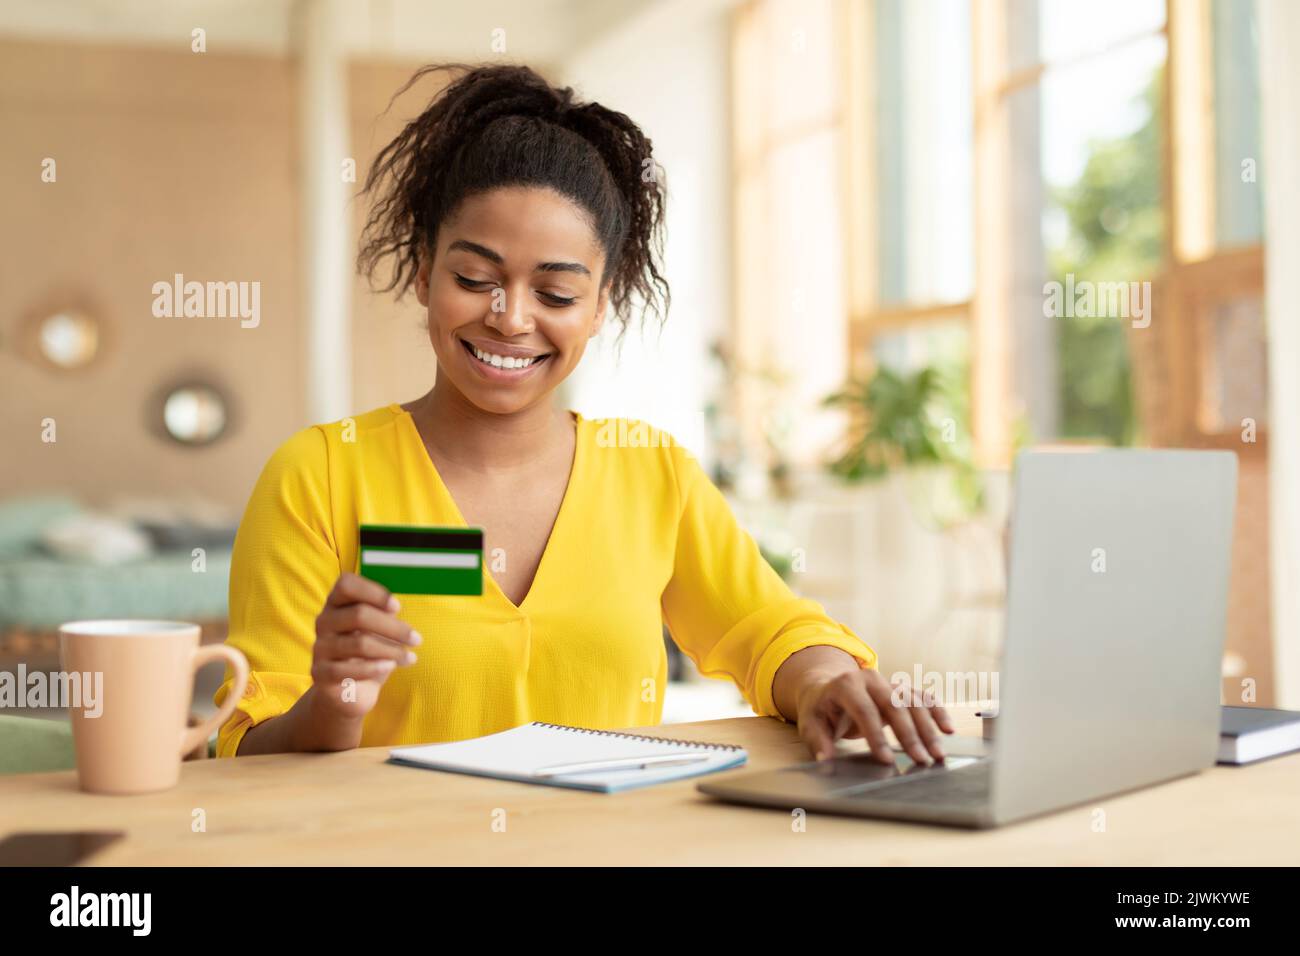 Effectuer une transaction financière. Femme noire excitée tenant une carte de crédit et utilisant un ordinateur personnel, assis à un bureau Banque D'Images